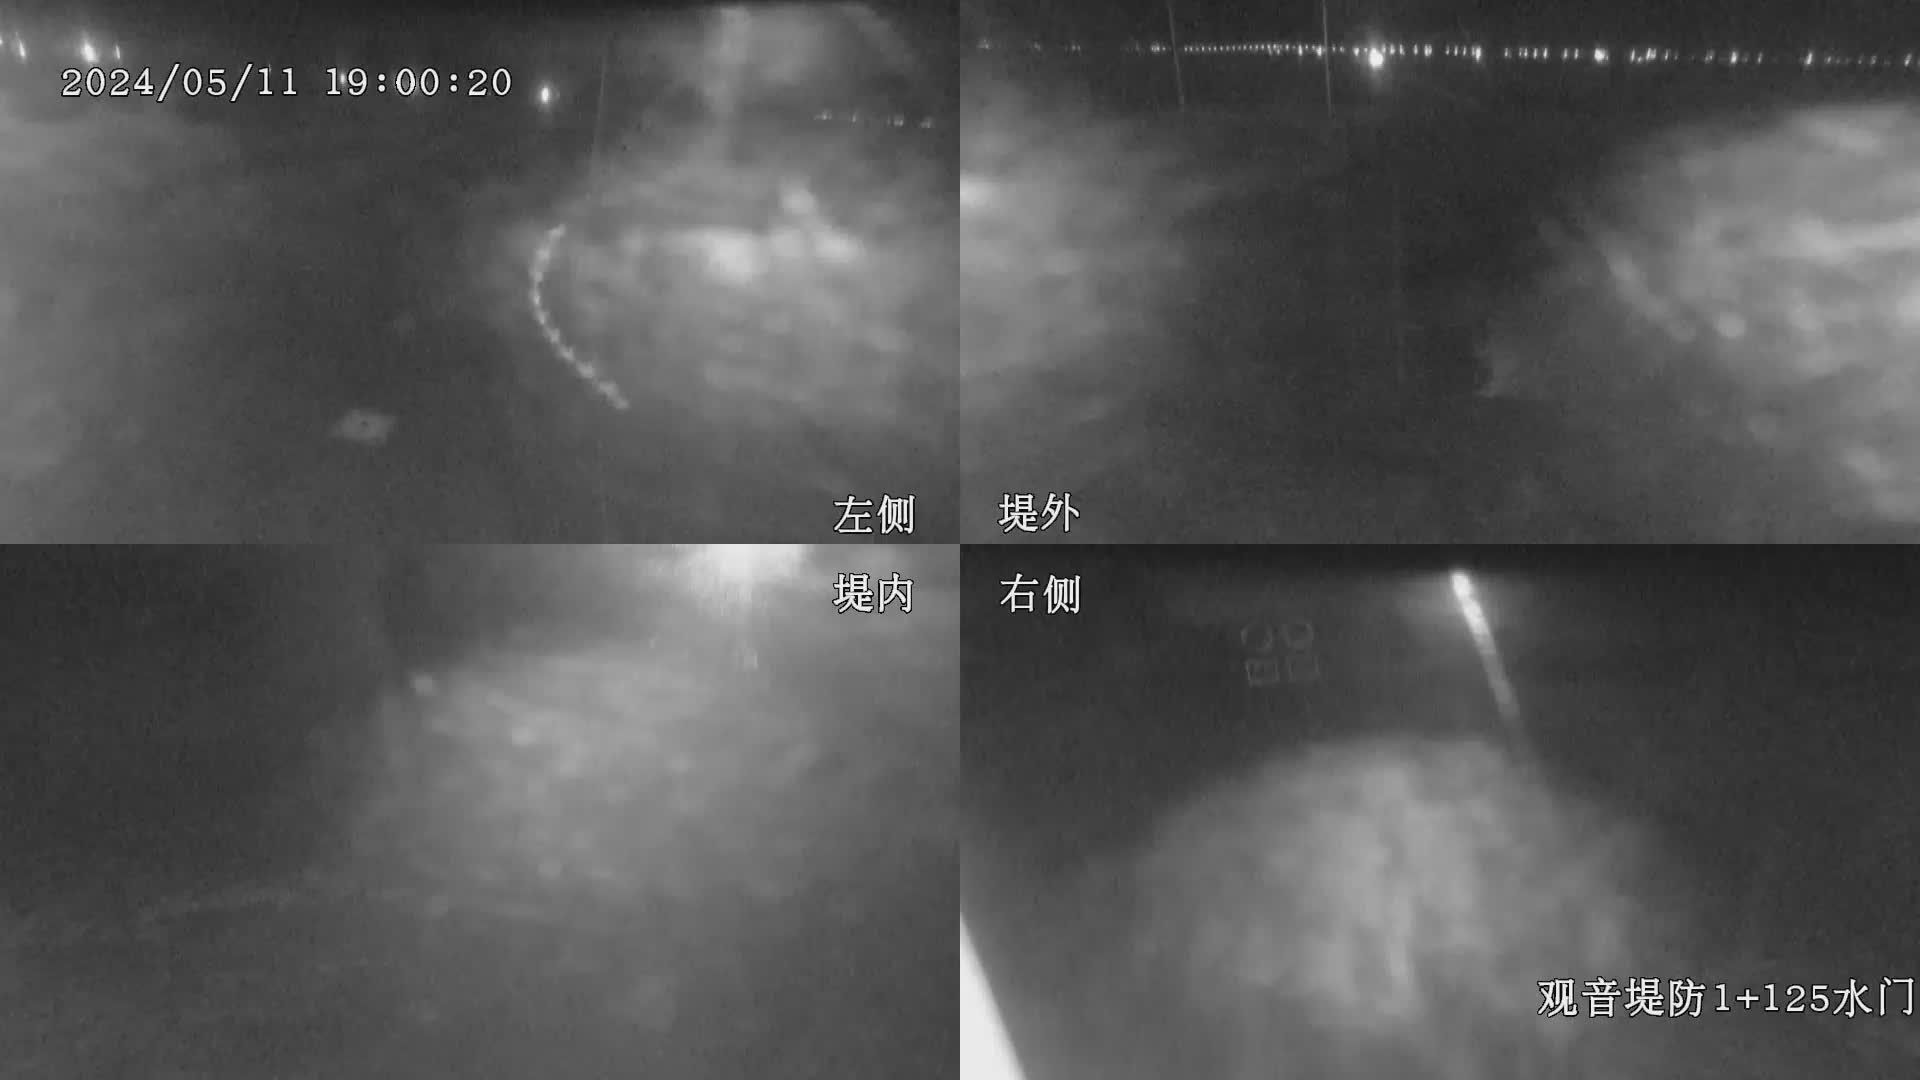 水利署水資源  九河局 觀音堤防1+125水門 全景攝影機 距離12.4公里 氣溫19.4度